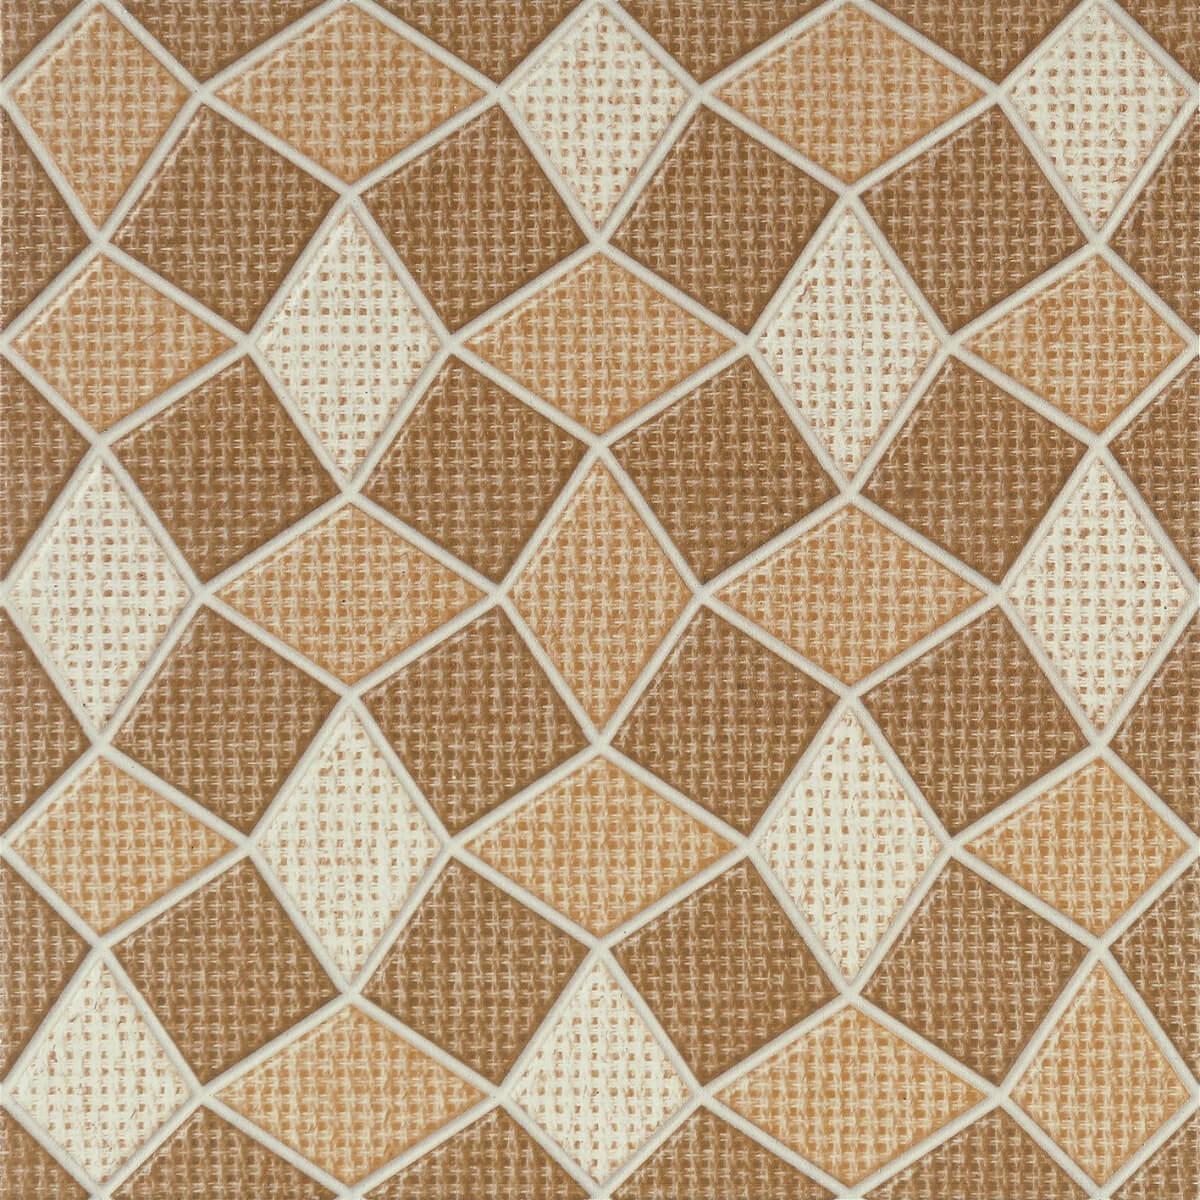 Matte Finish Tiles for Automotive Tiles